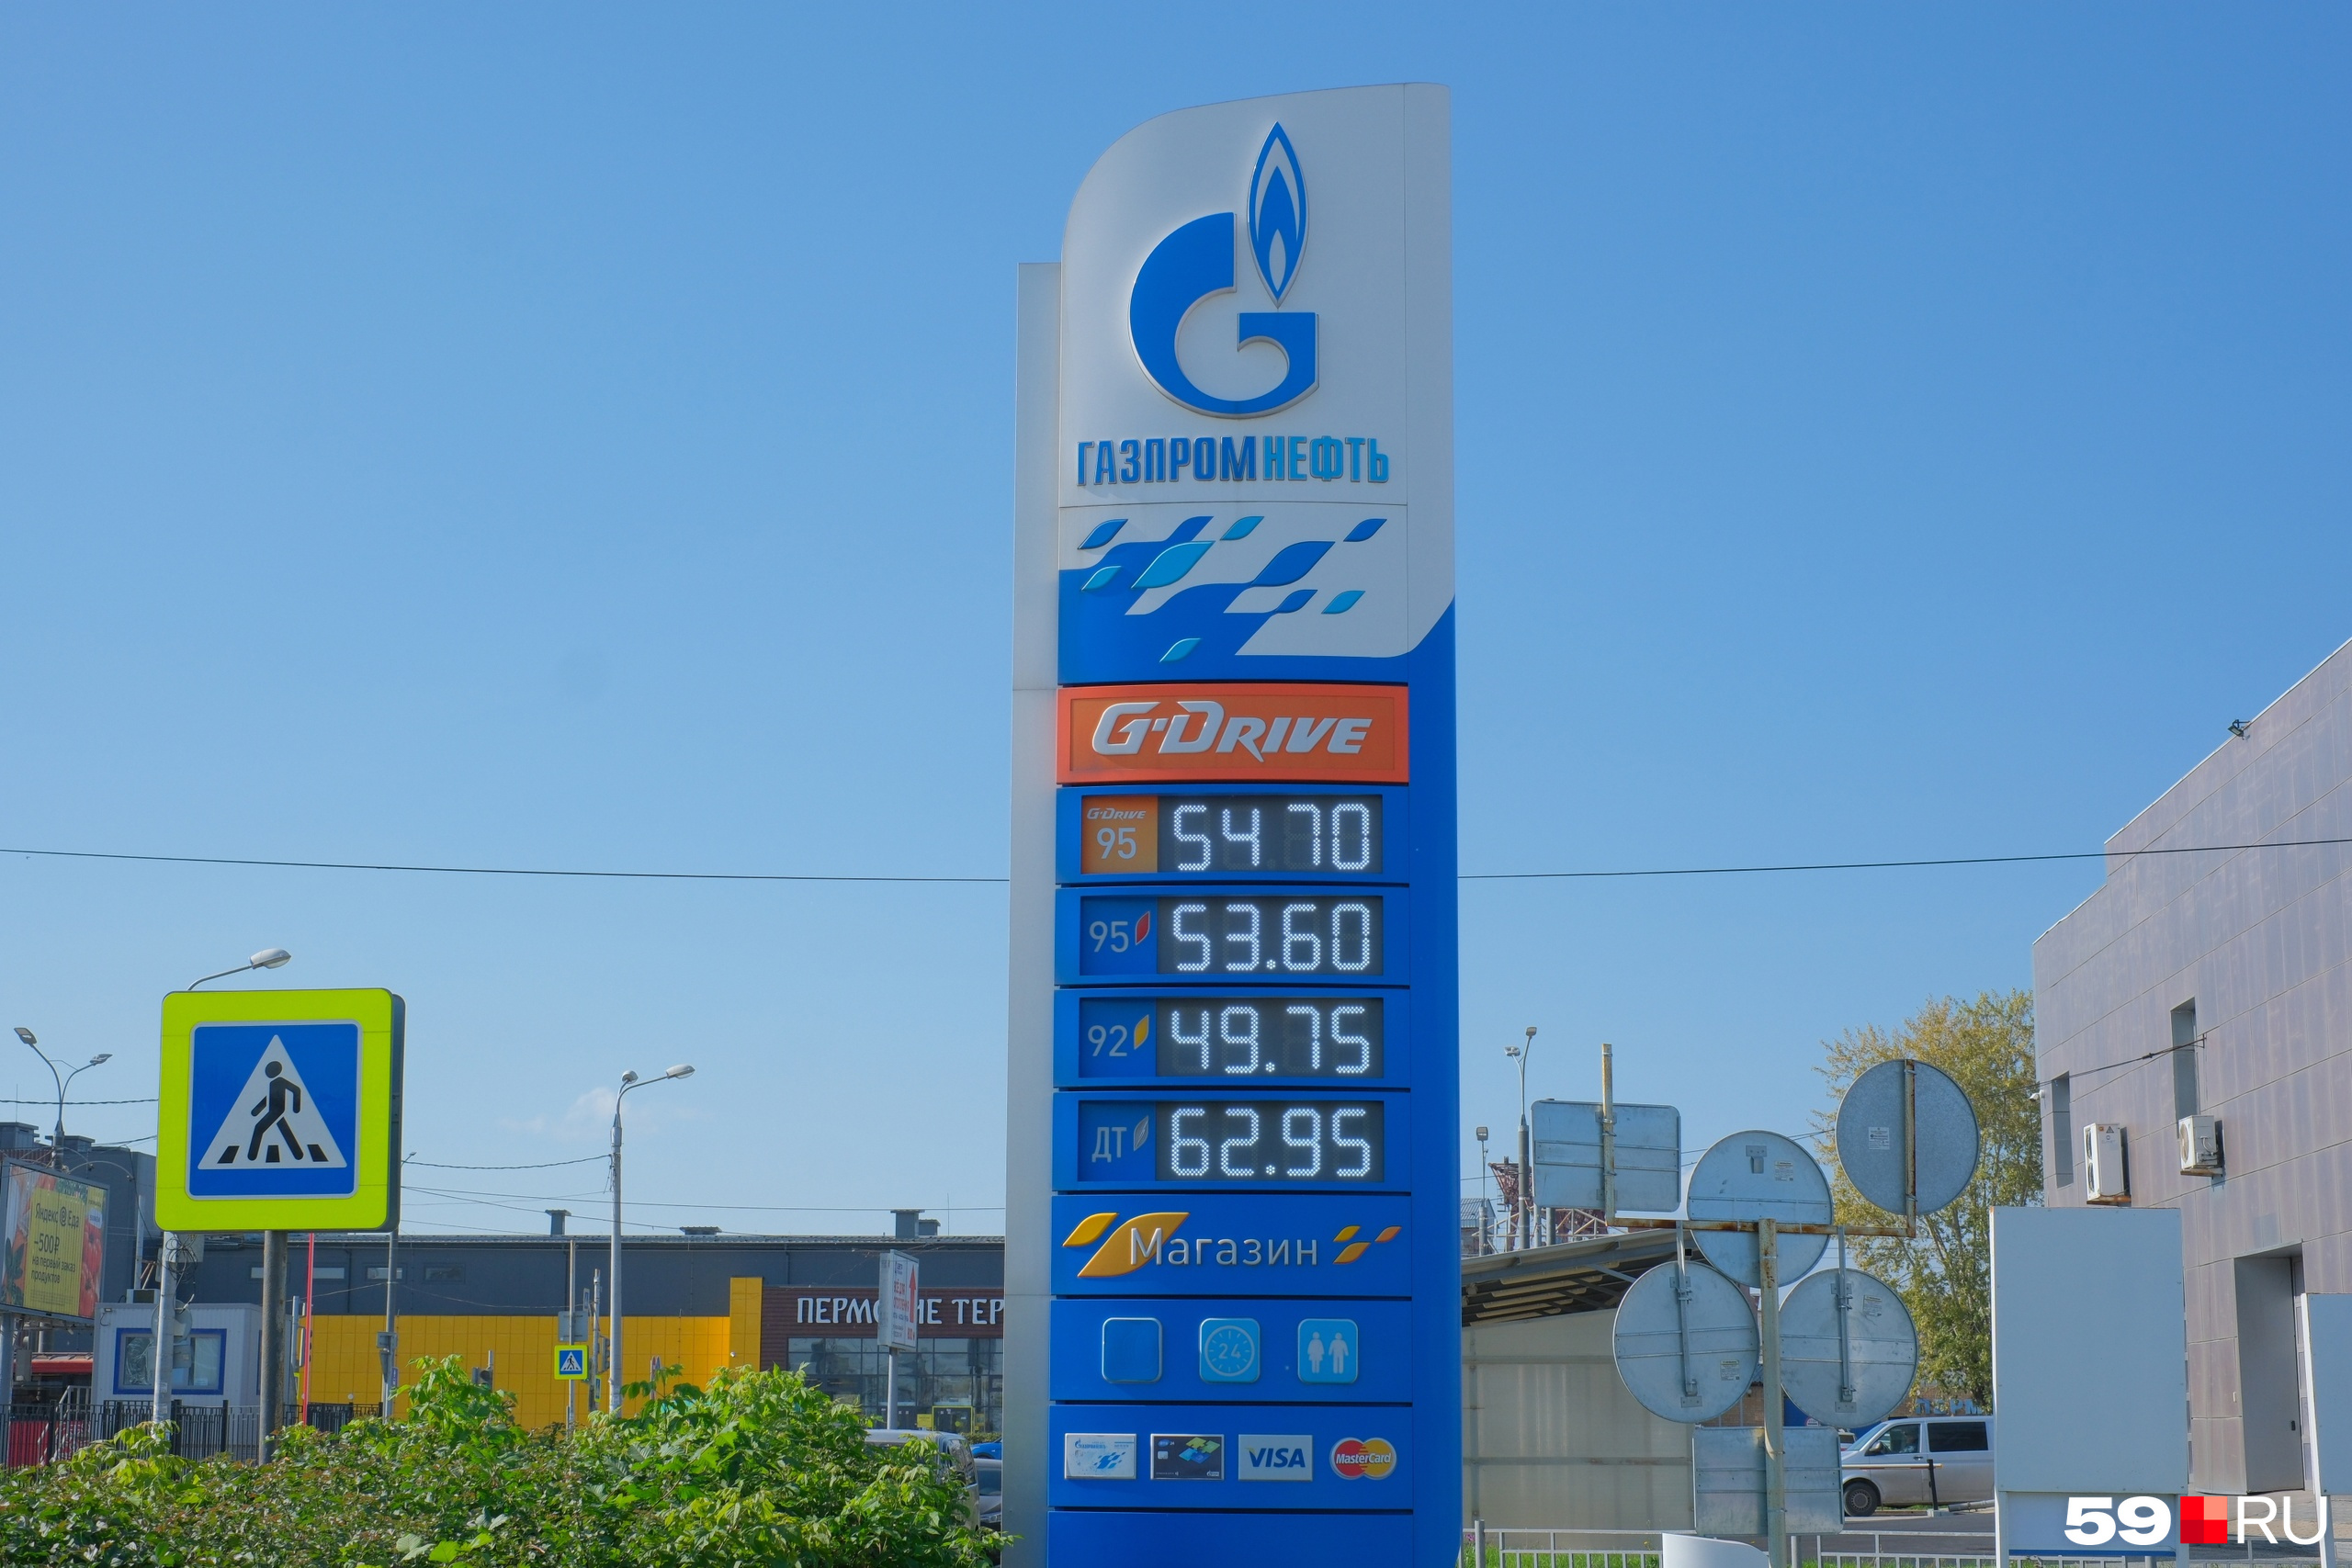 Кажется, здесь цены на бензин чуть меньше, чем на других заправках по соседству